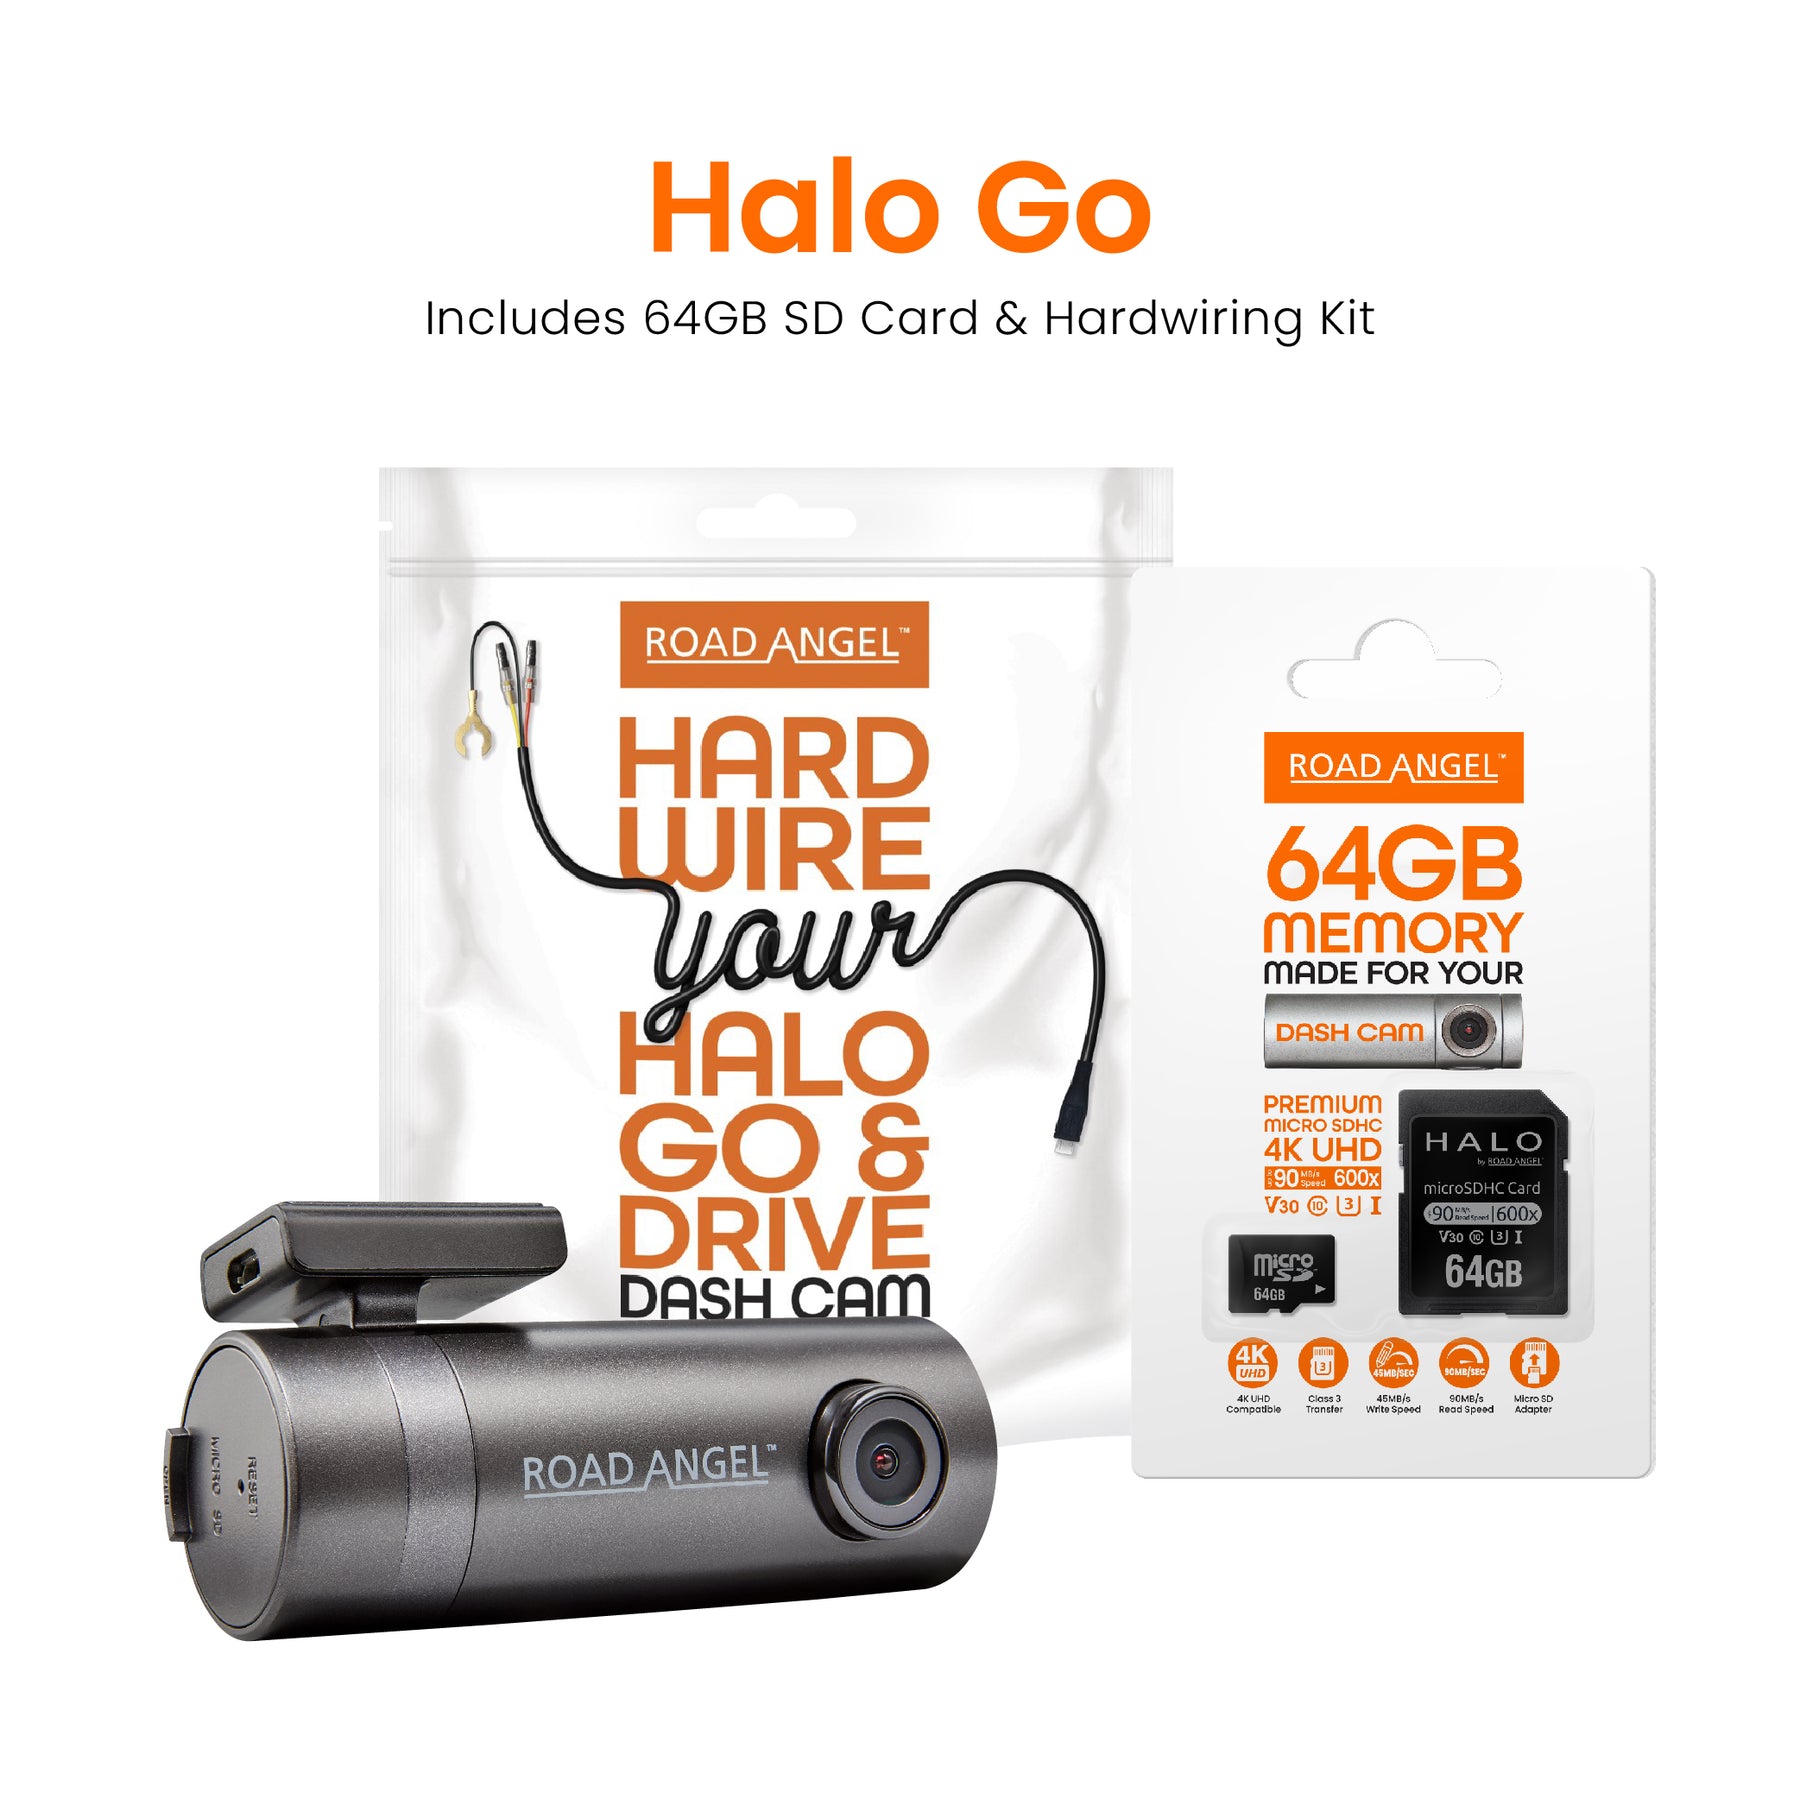 HWK5V - Road Angel Halo Dash Cam Hardwiring Kit - for Halo Go